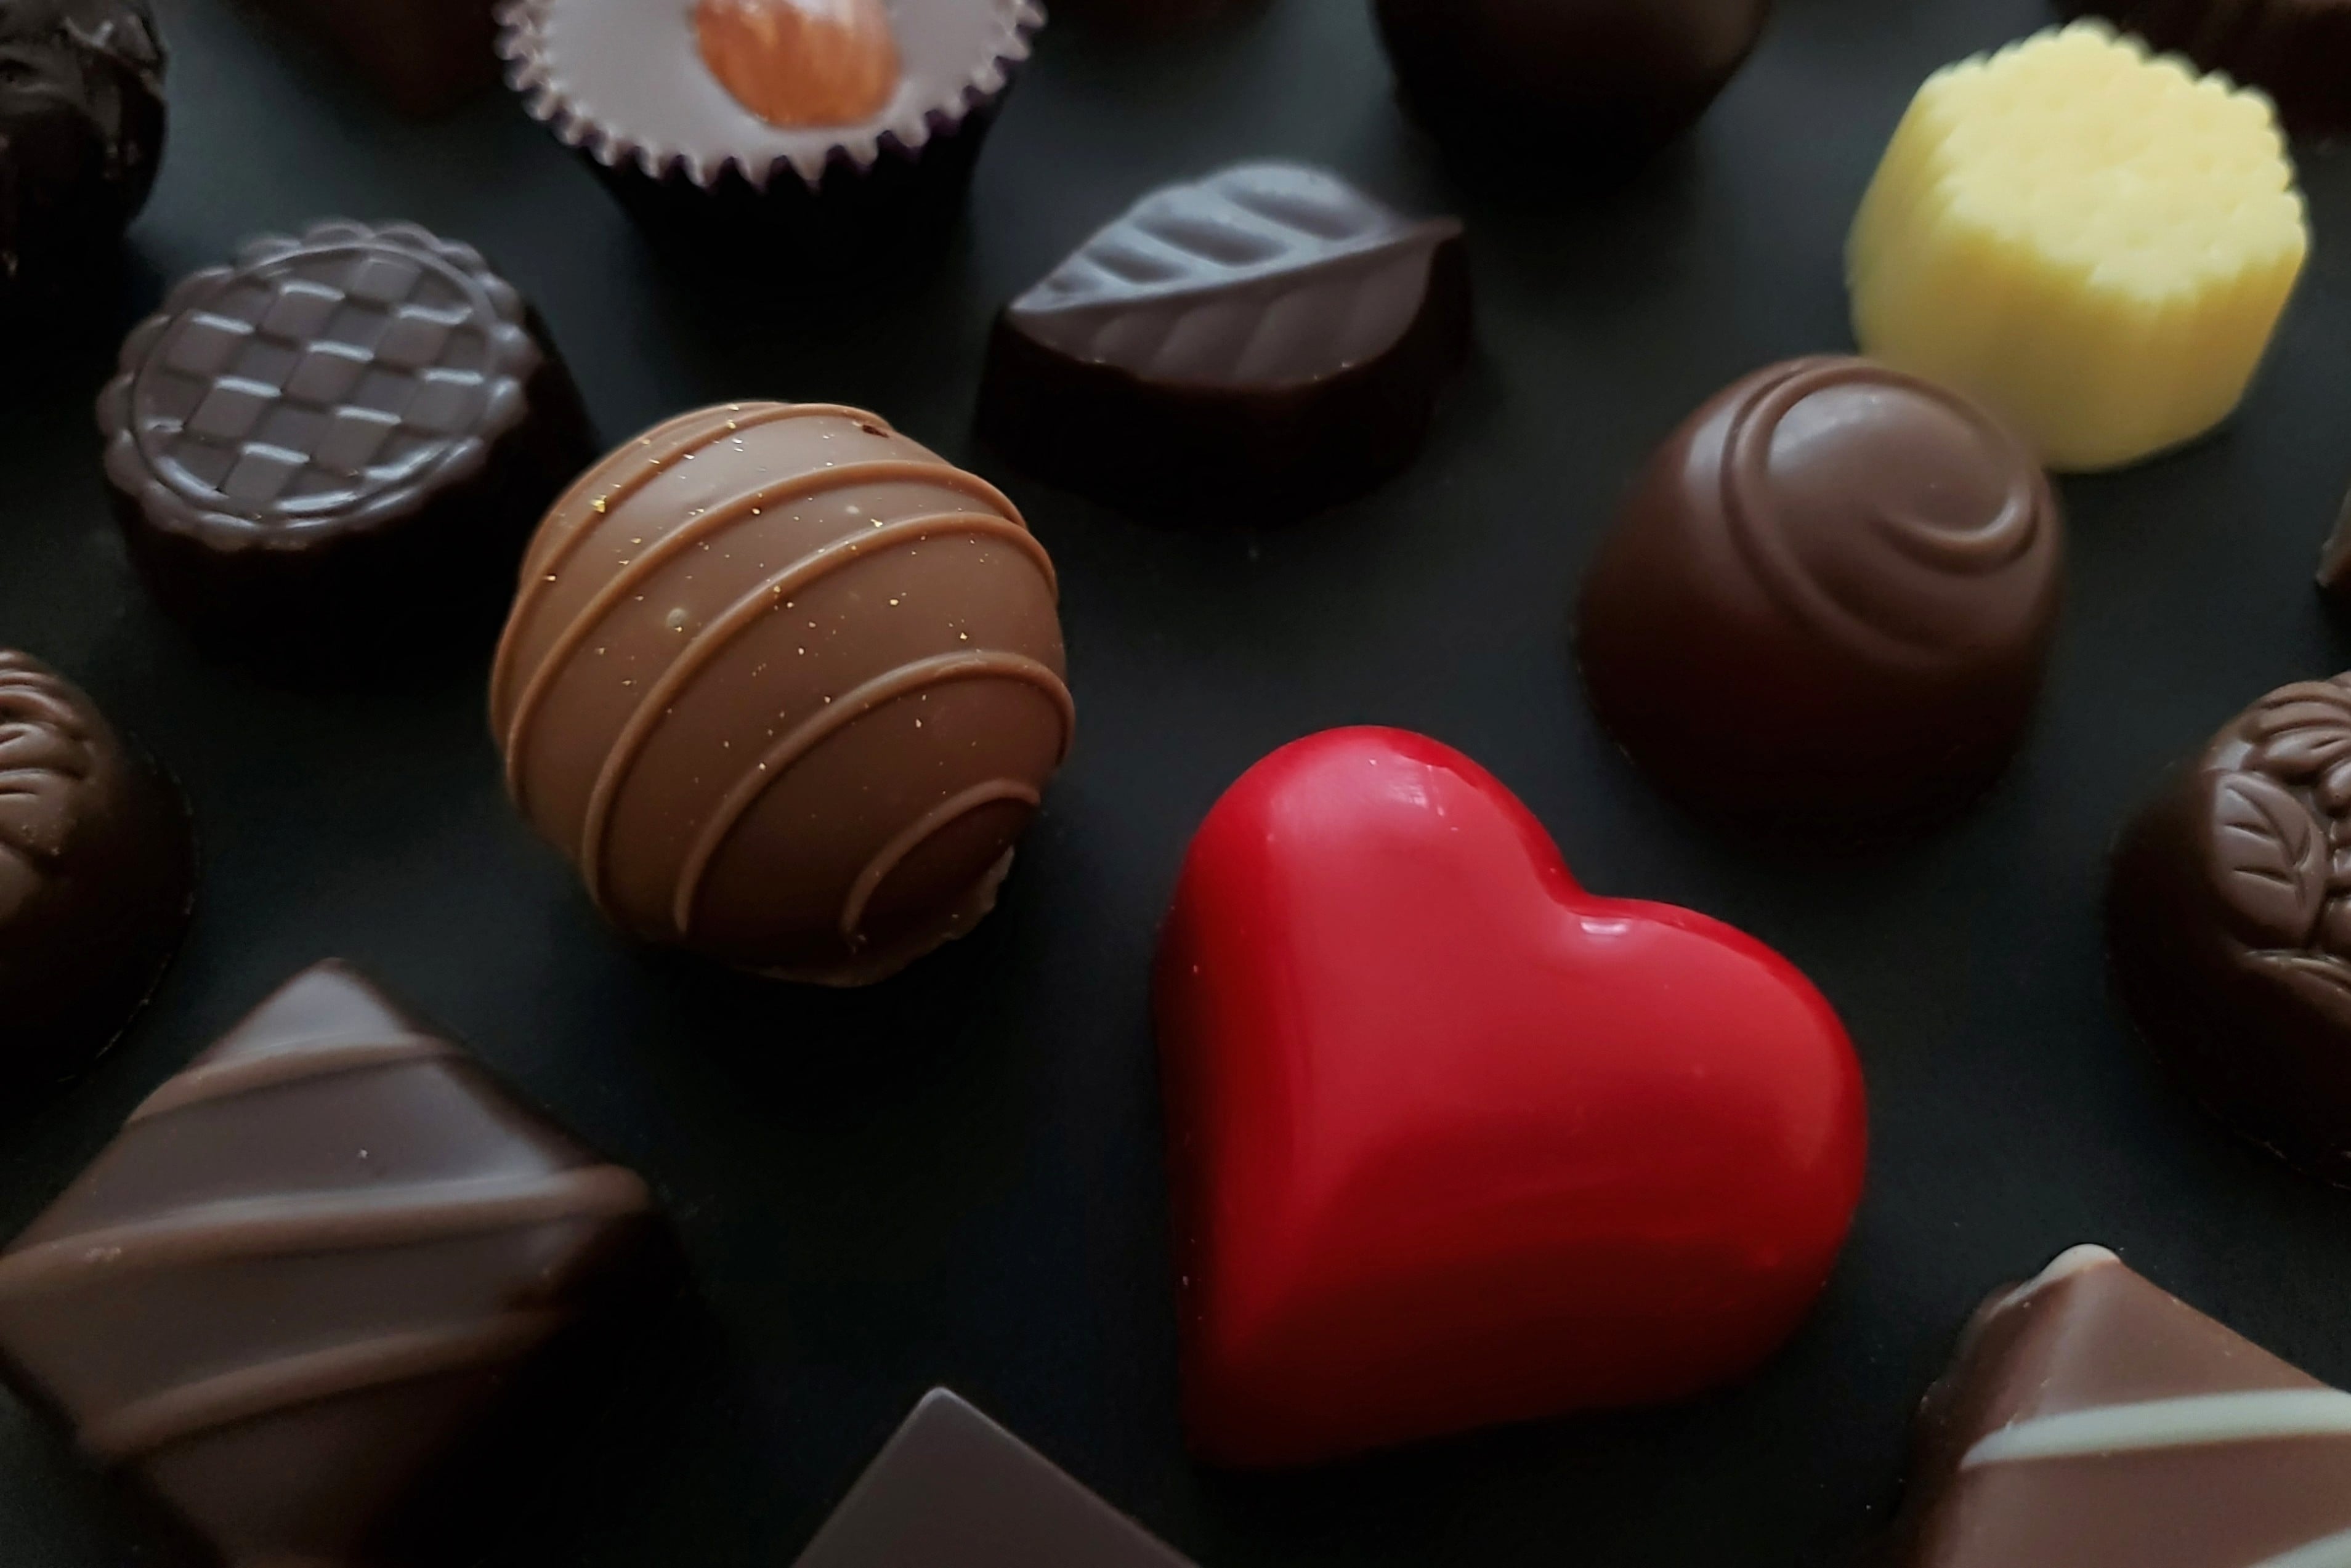 有名なチョコレートといえば？世界的にも大人気のお菓子を紹介